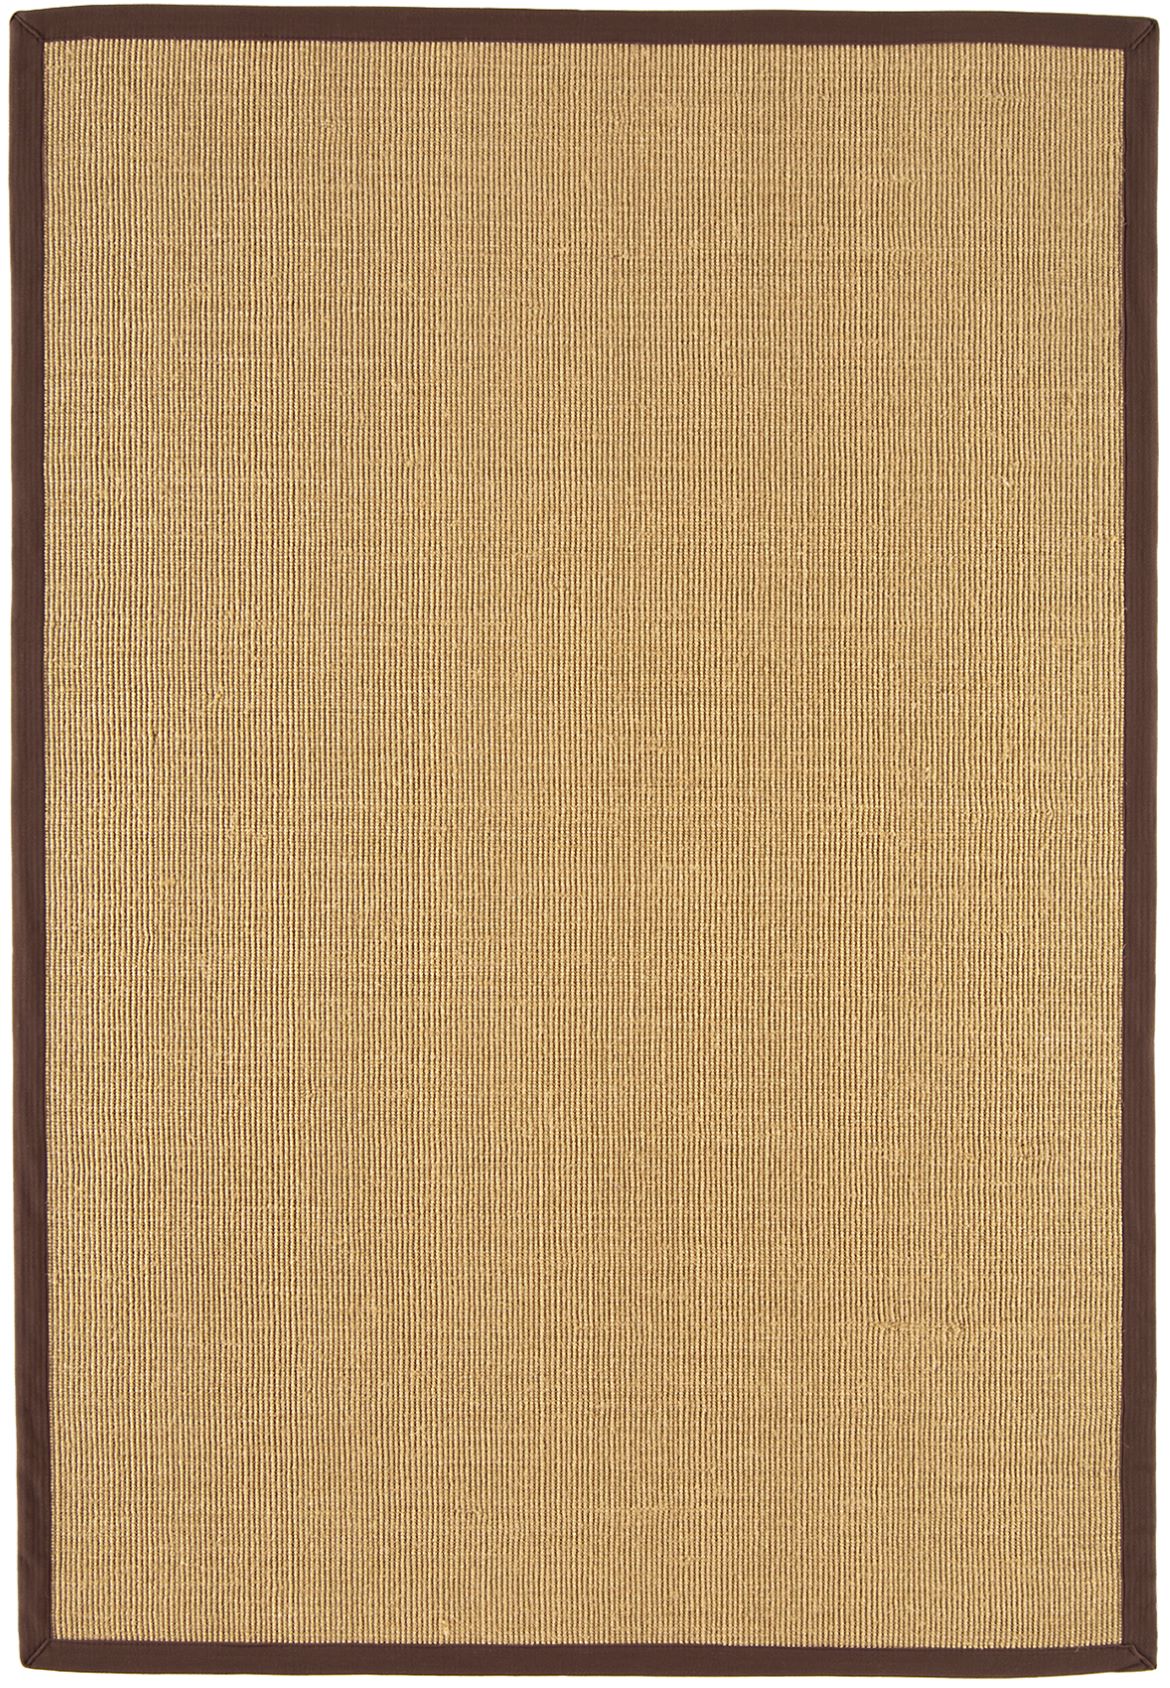 asiatic-rug-sisal-linen-chocolate-border